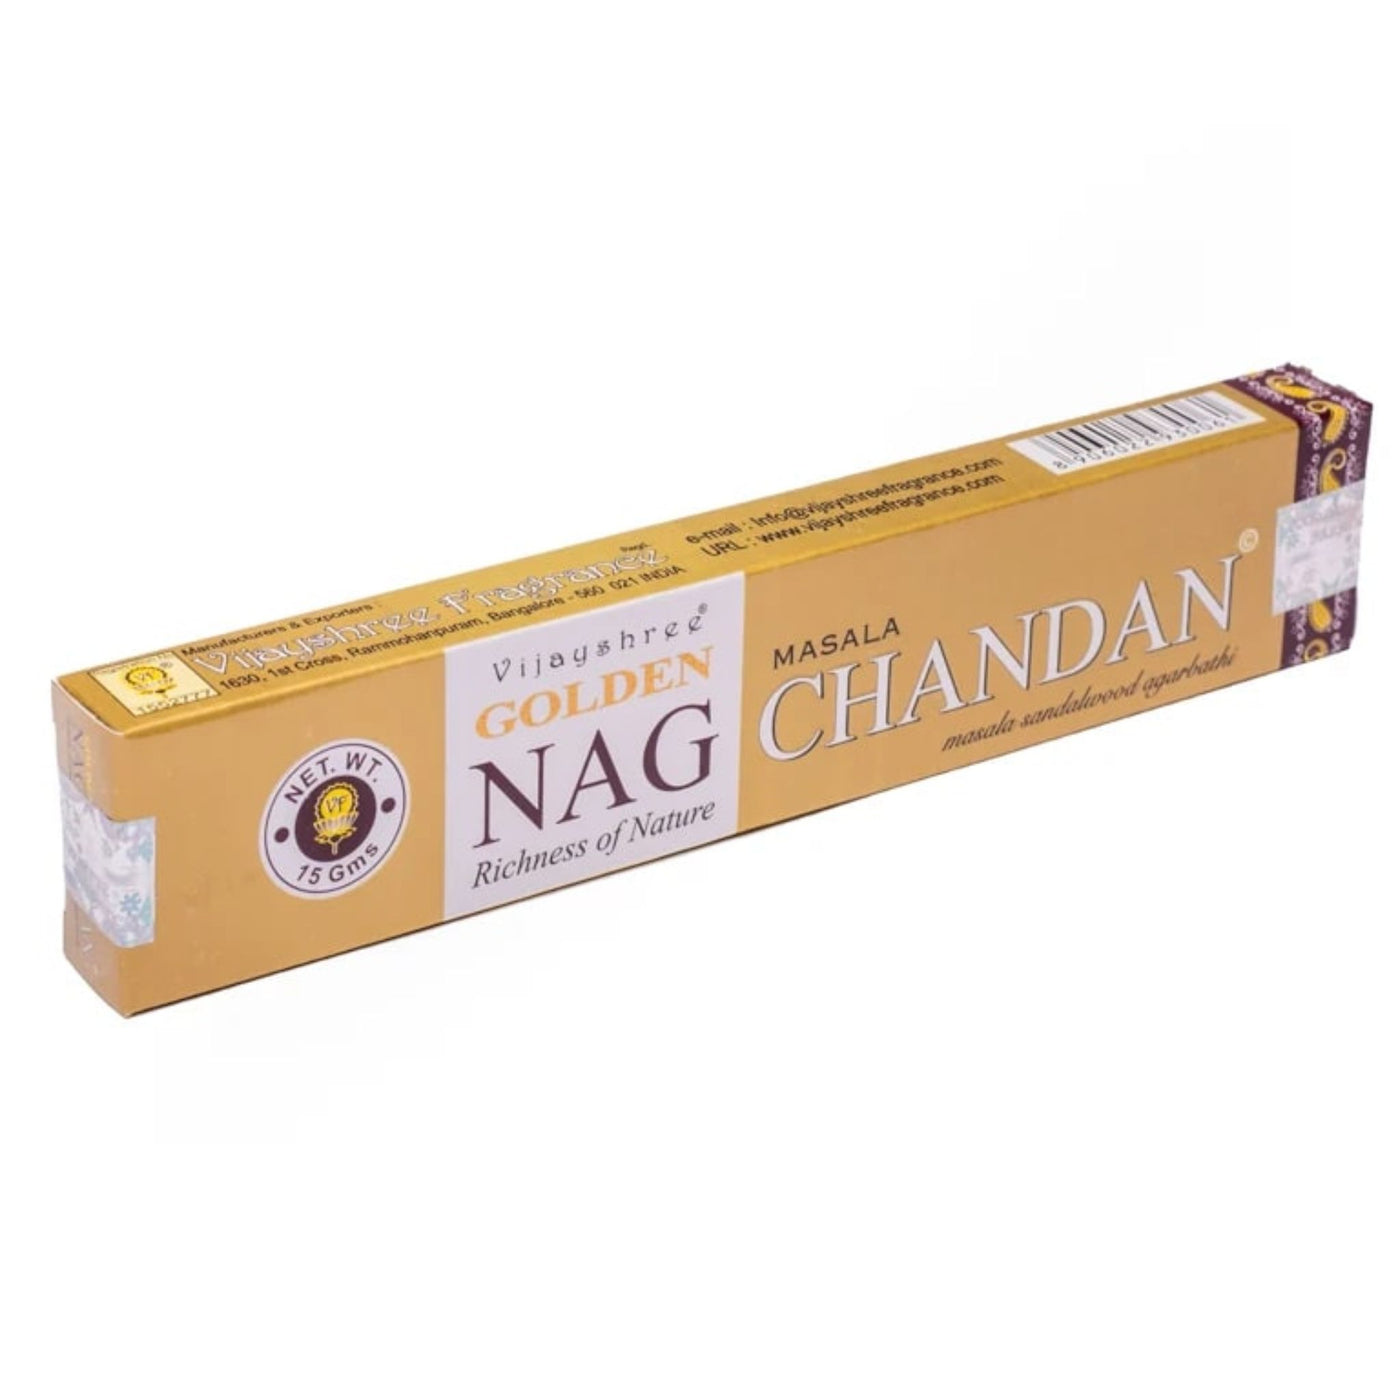 Golden Nag Chandan - rökelsestickor